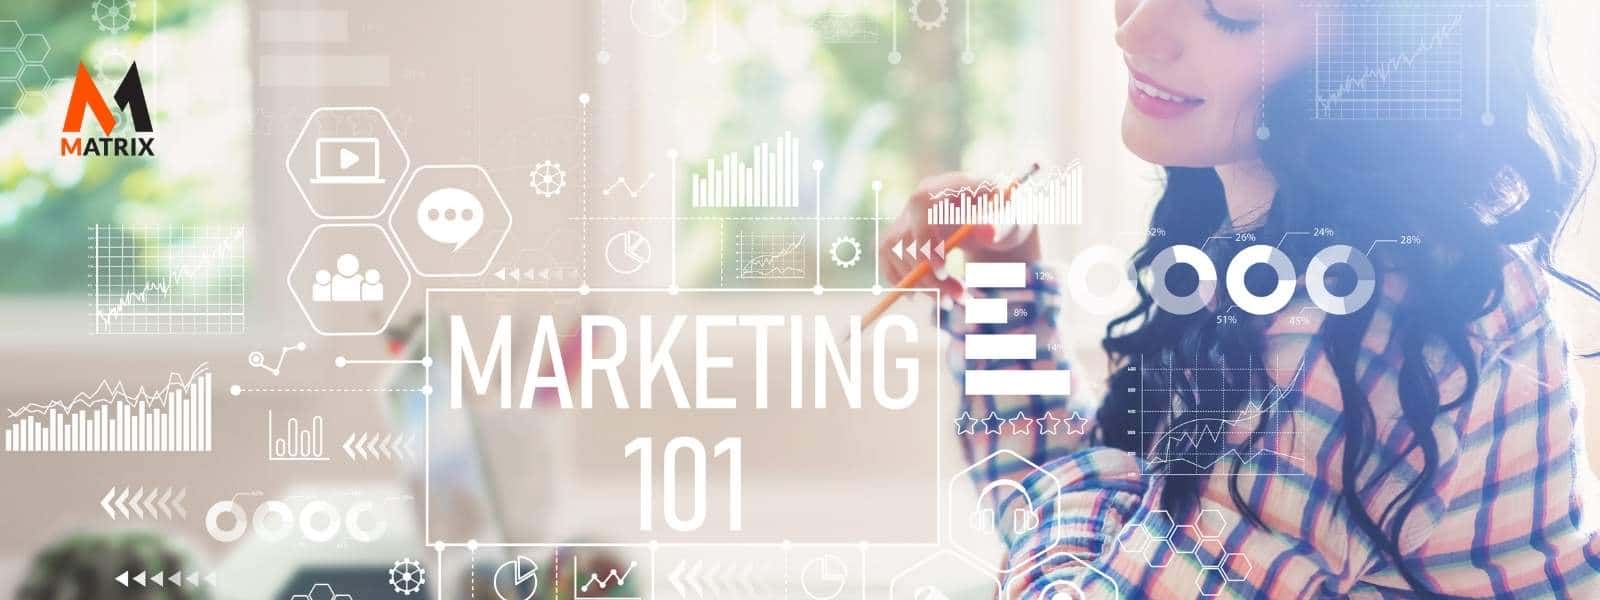 digital marketing 101 strategies